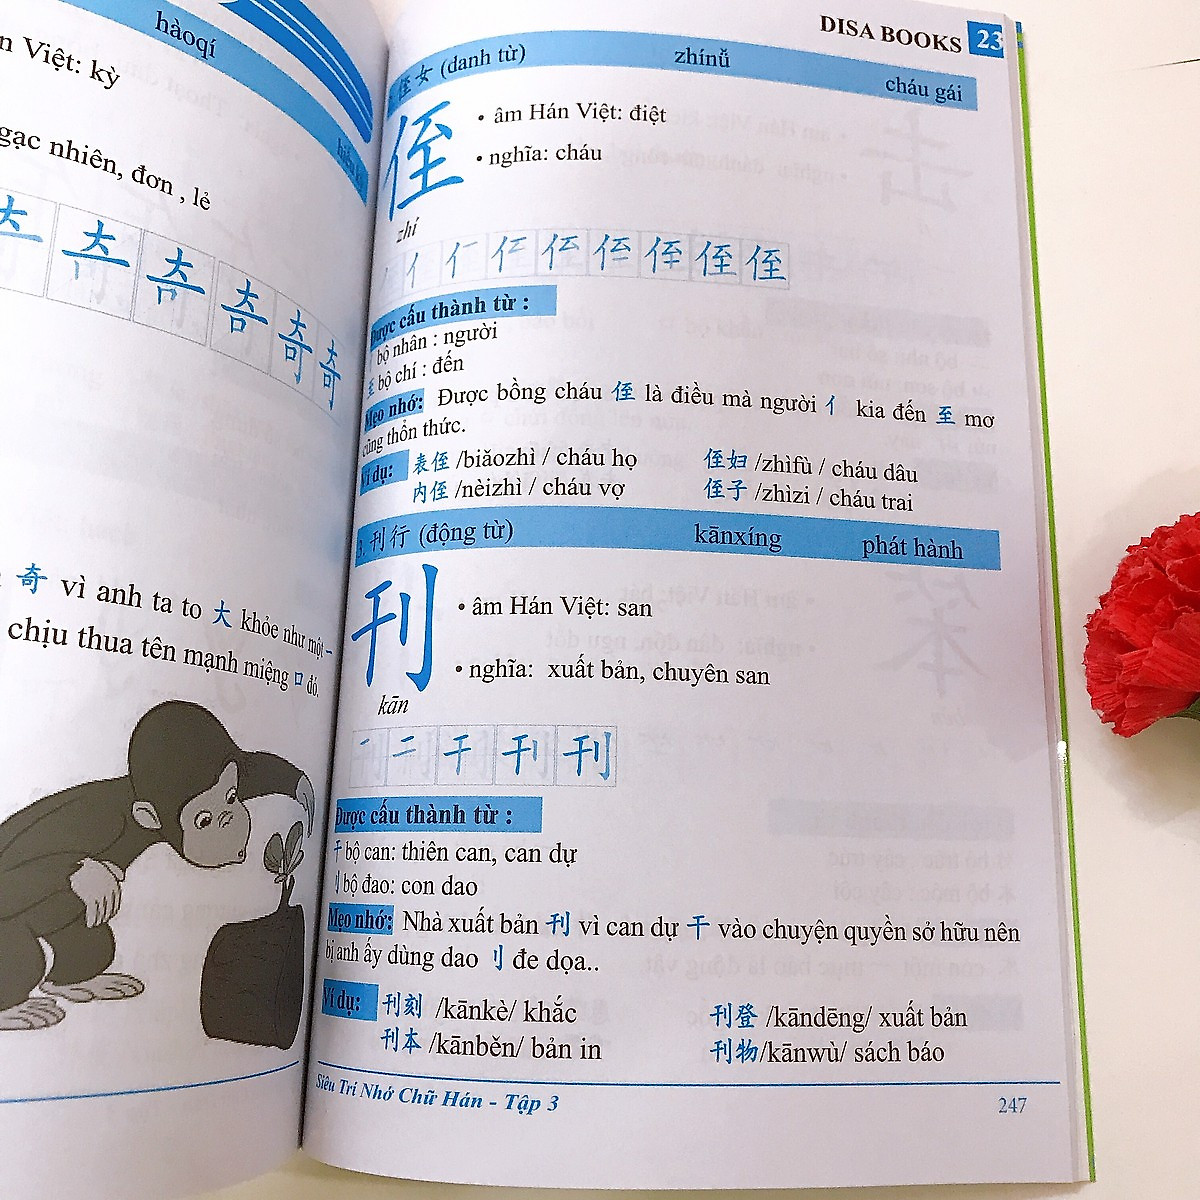 Combo 4 sách: Siêu trí nhớ chữ Hán tập 01 + tập 02 và Tự học tiếng trung từ con số 0 tập 1 + tập 2 kèm DVD Audio sách nghe